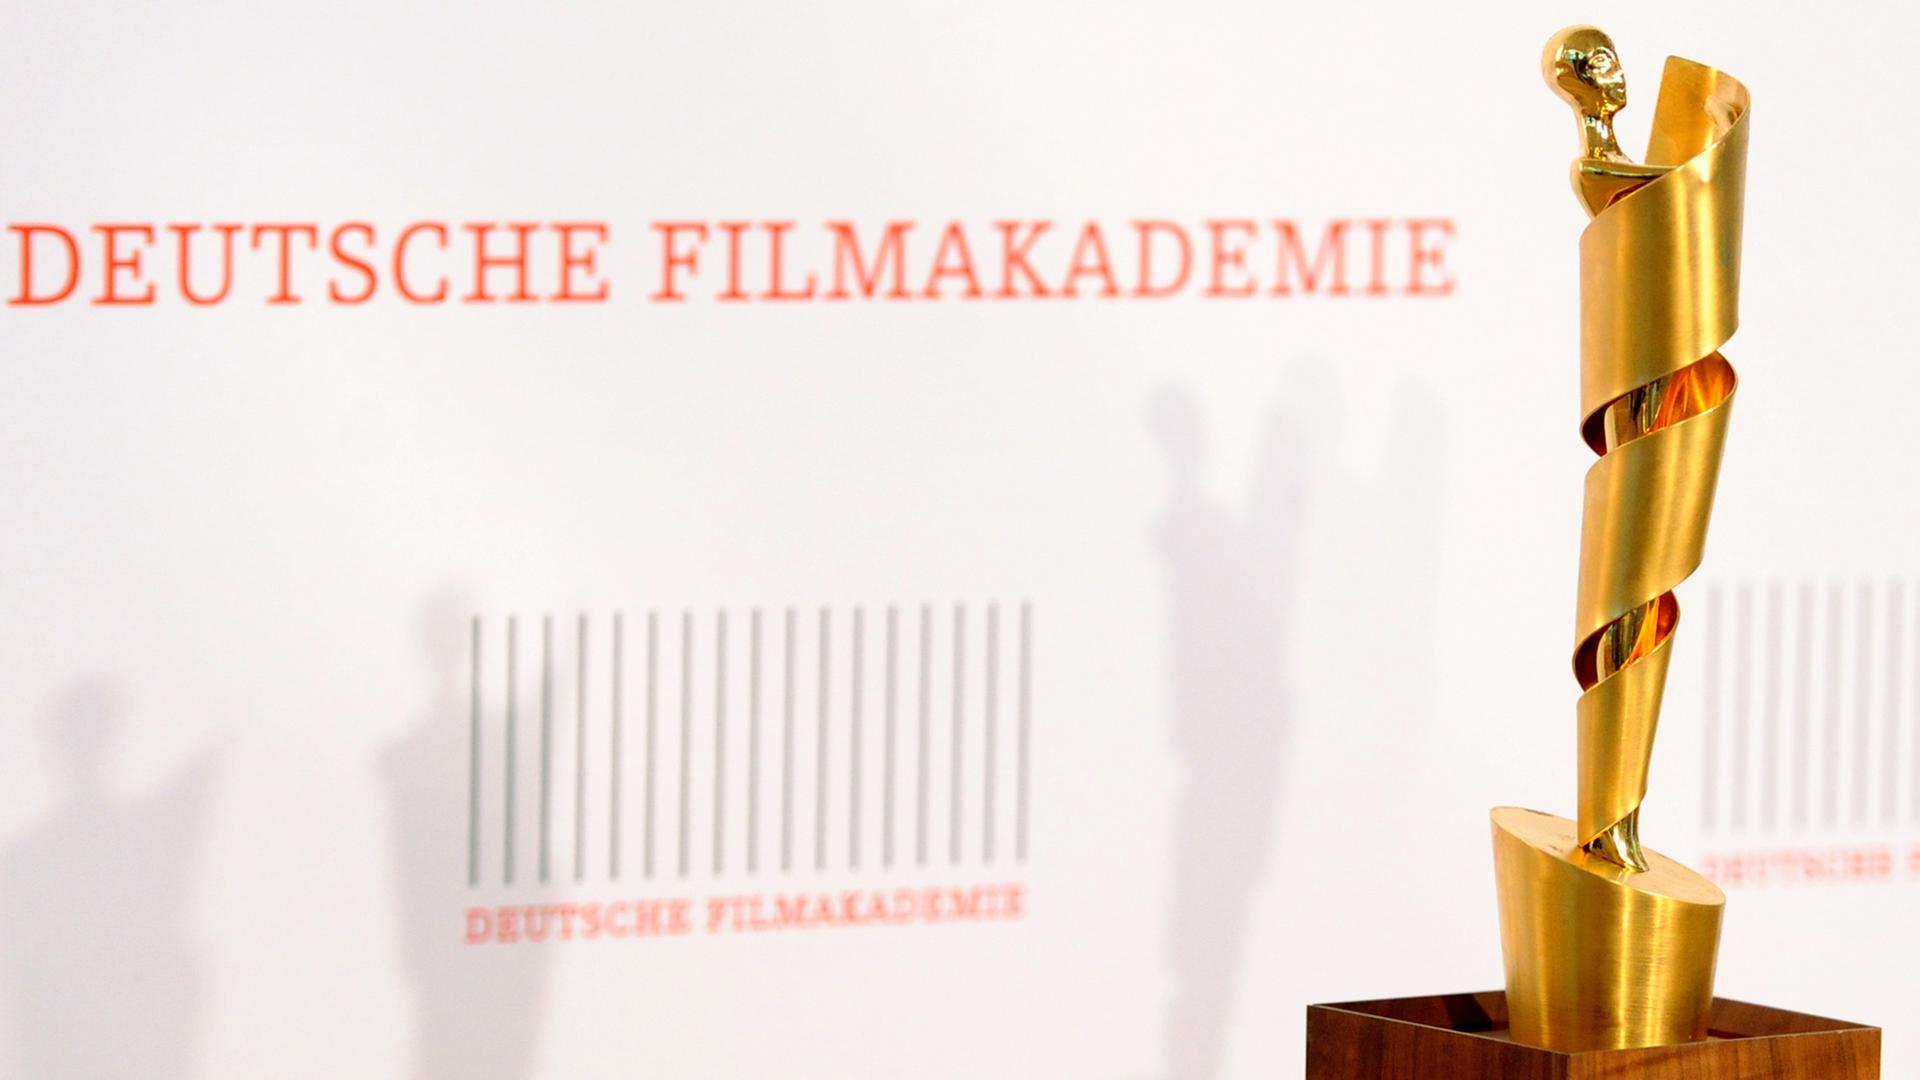 Die "Lola"-Trophäe wird am 28.03.2014 in Berlin bei der Bekanntgabe der Nominierungen für den Deutschen Filmpreis 2014 präsentiert. Der Preis soll am 09.05.2014 verliehen werden.